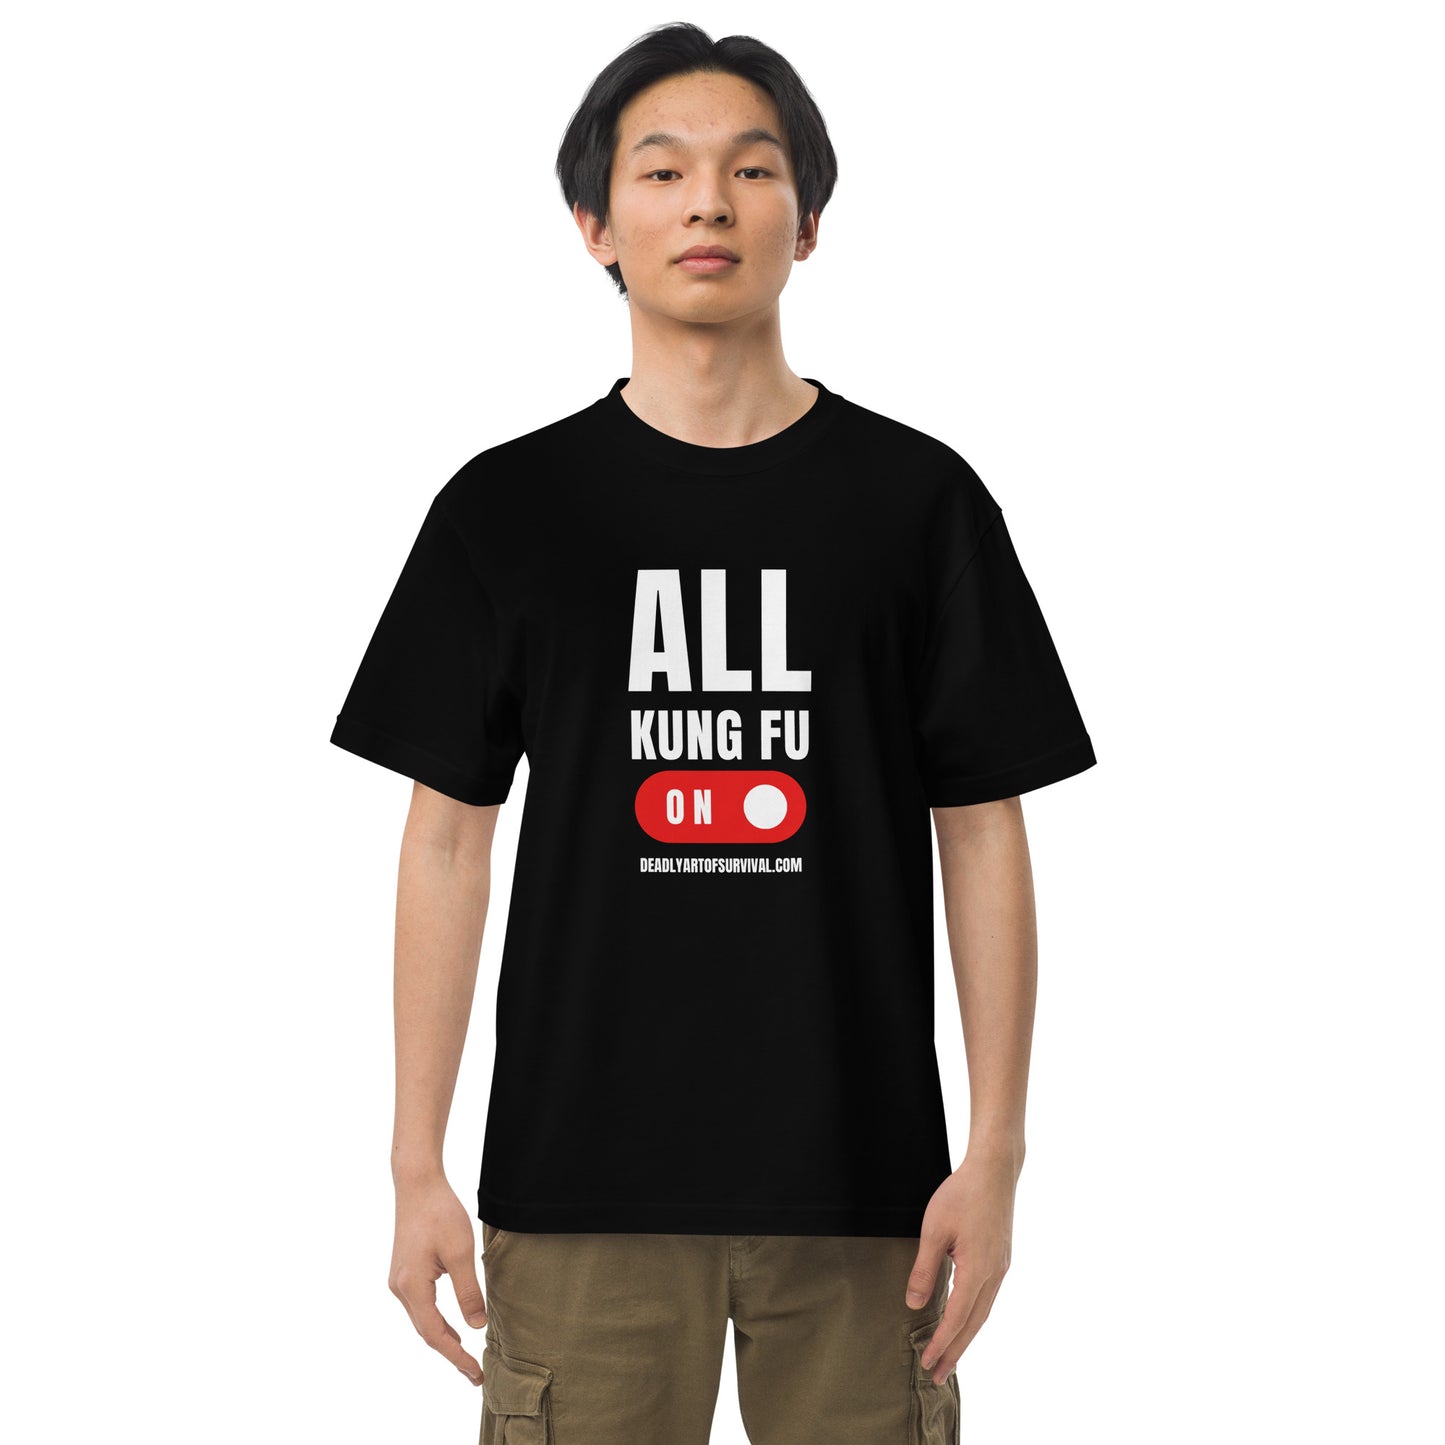 All Kung Fu T-Shirt deadlyartofsurvival.com